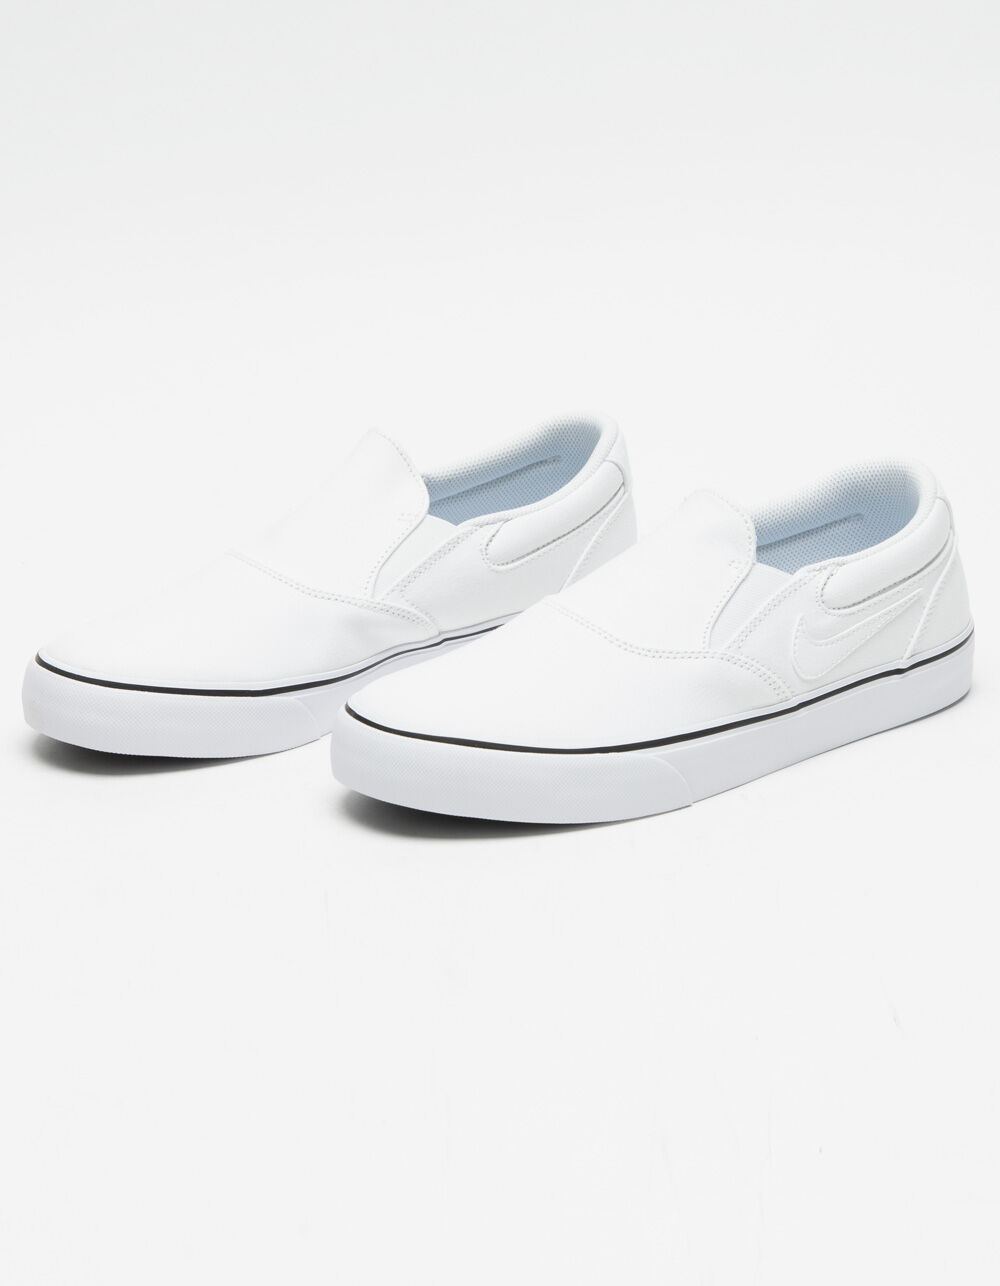 NIKE SB Chron 2 Slip-On Shoes - WHITE | Tillys